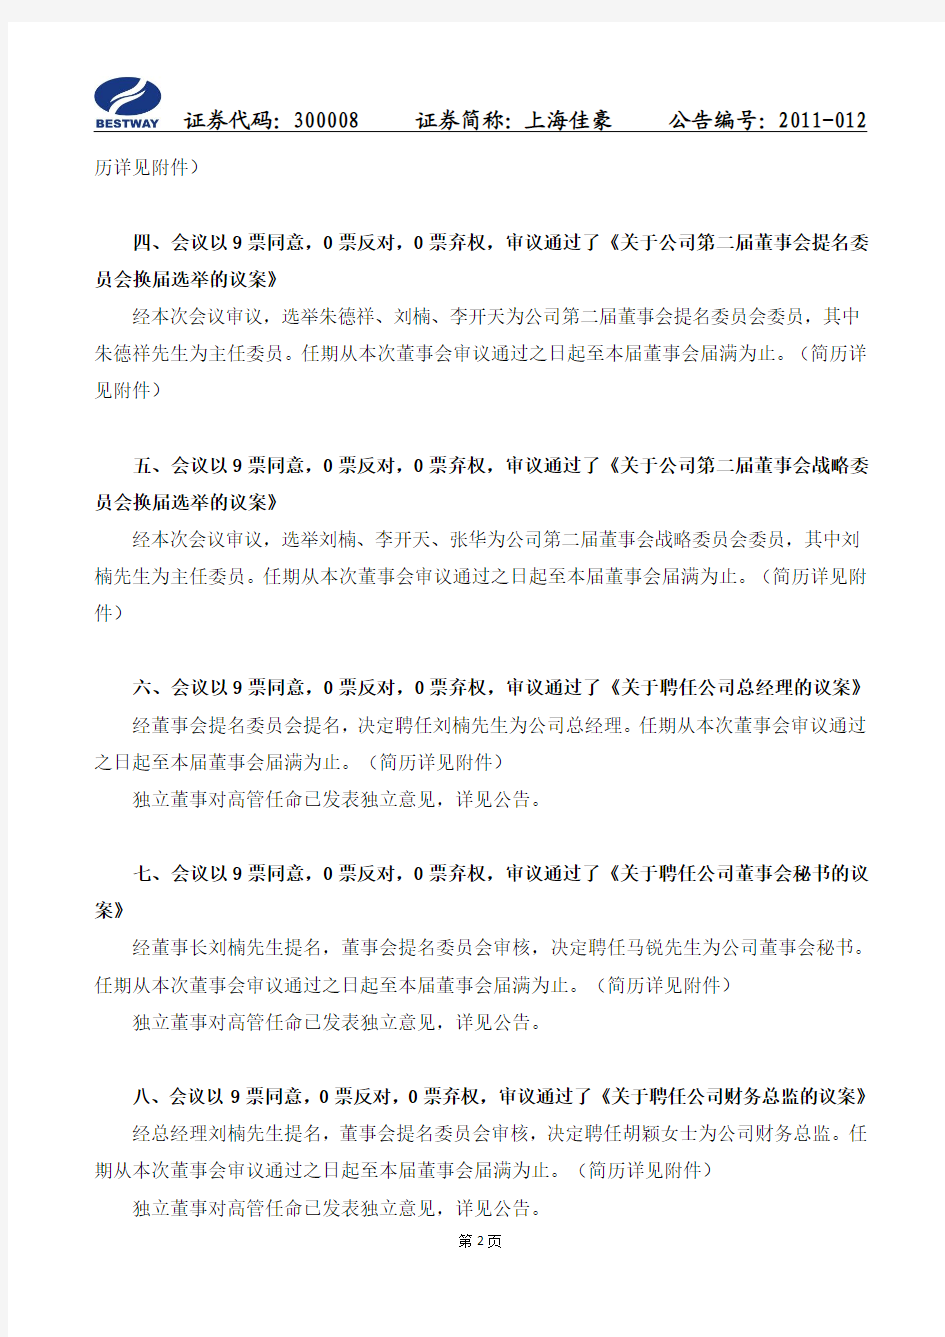 上海佳豪：第二届董事会第一次会议决议公告 2011-02-01